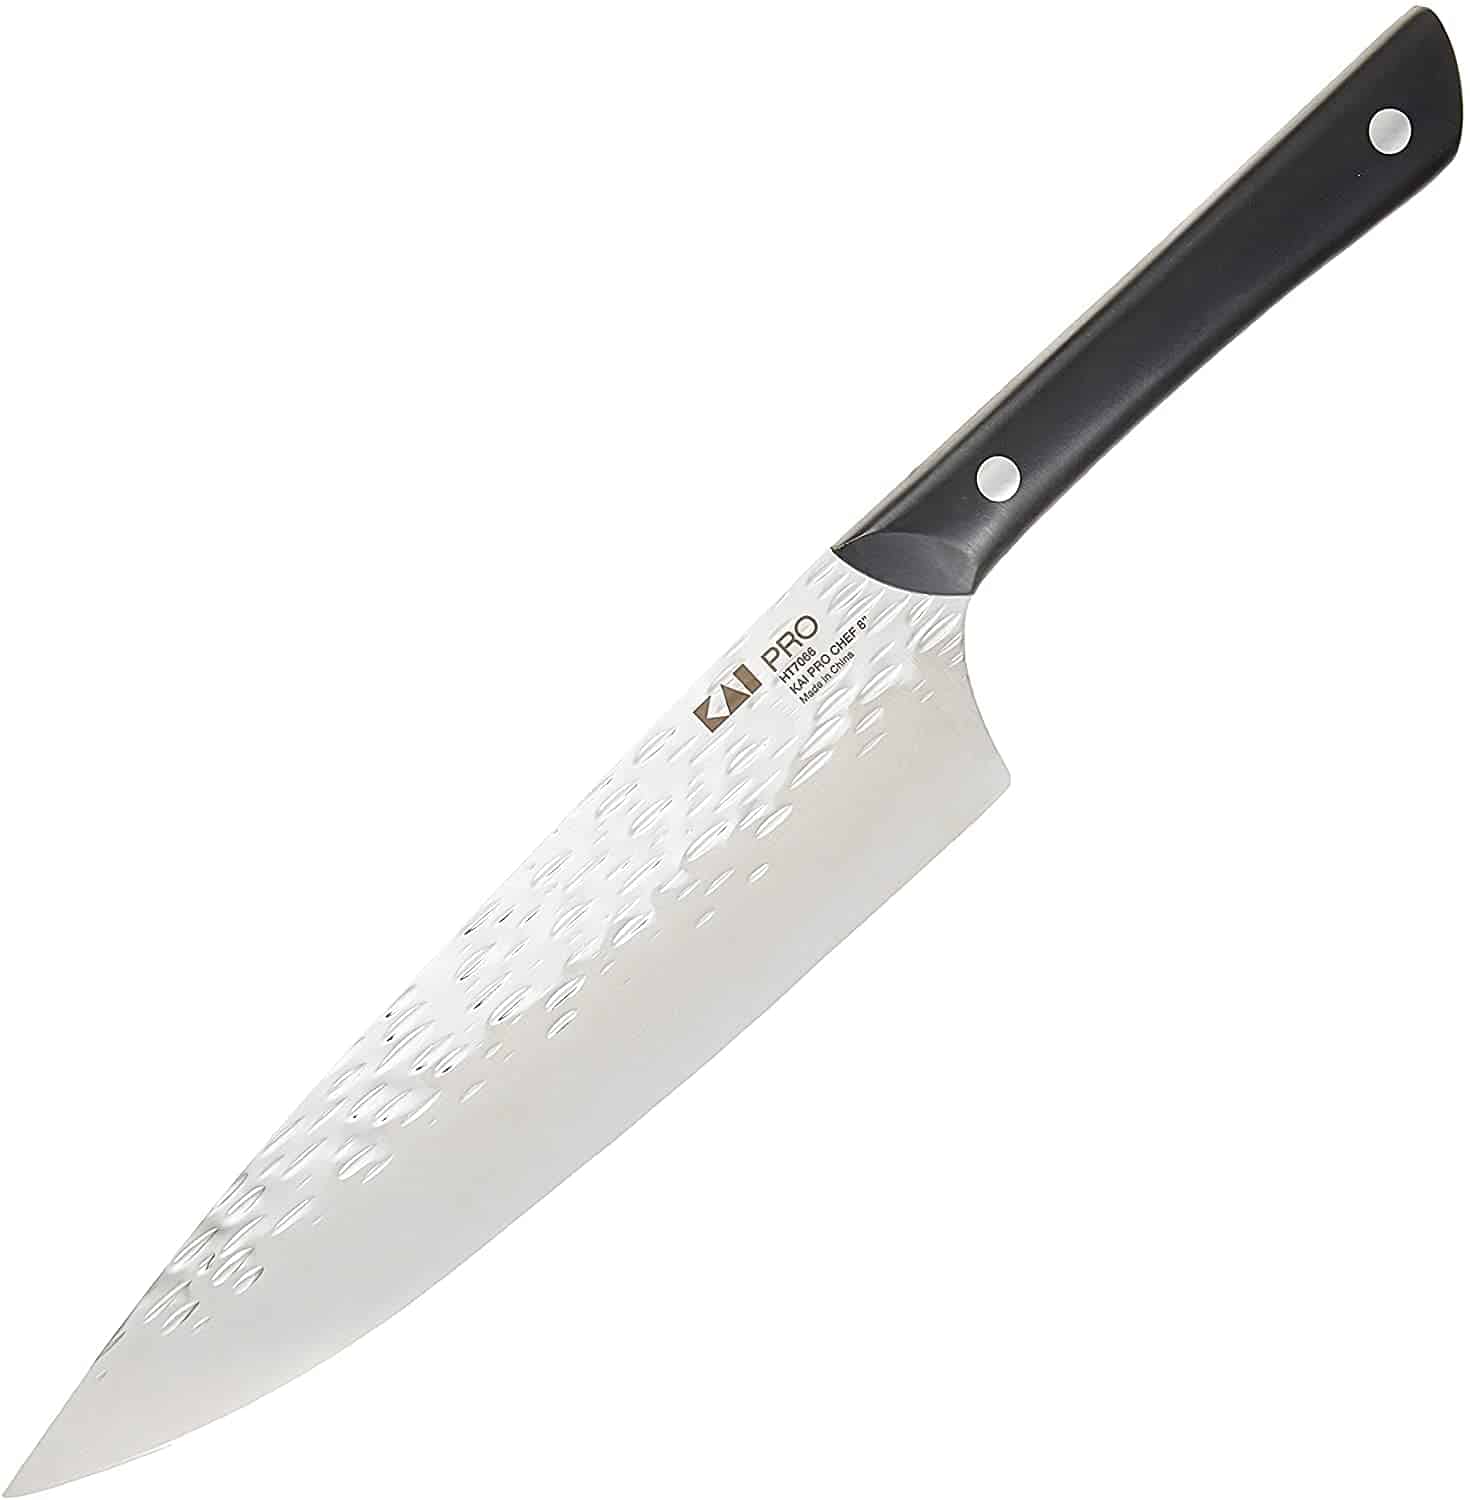 最高の予算の船雪-カイキッチン8シェフのナイフ